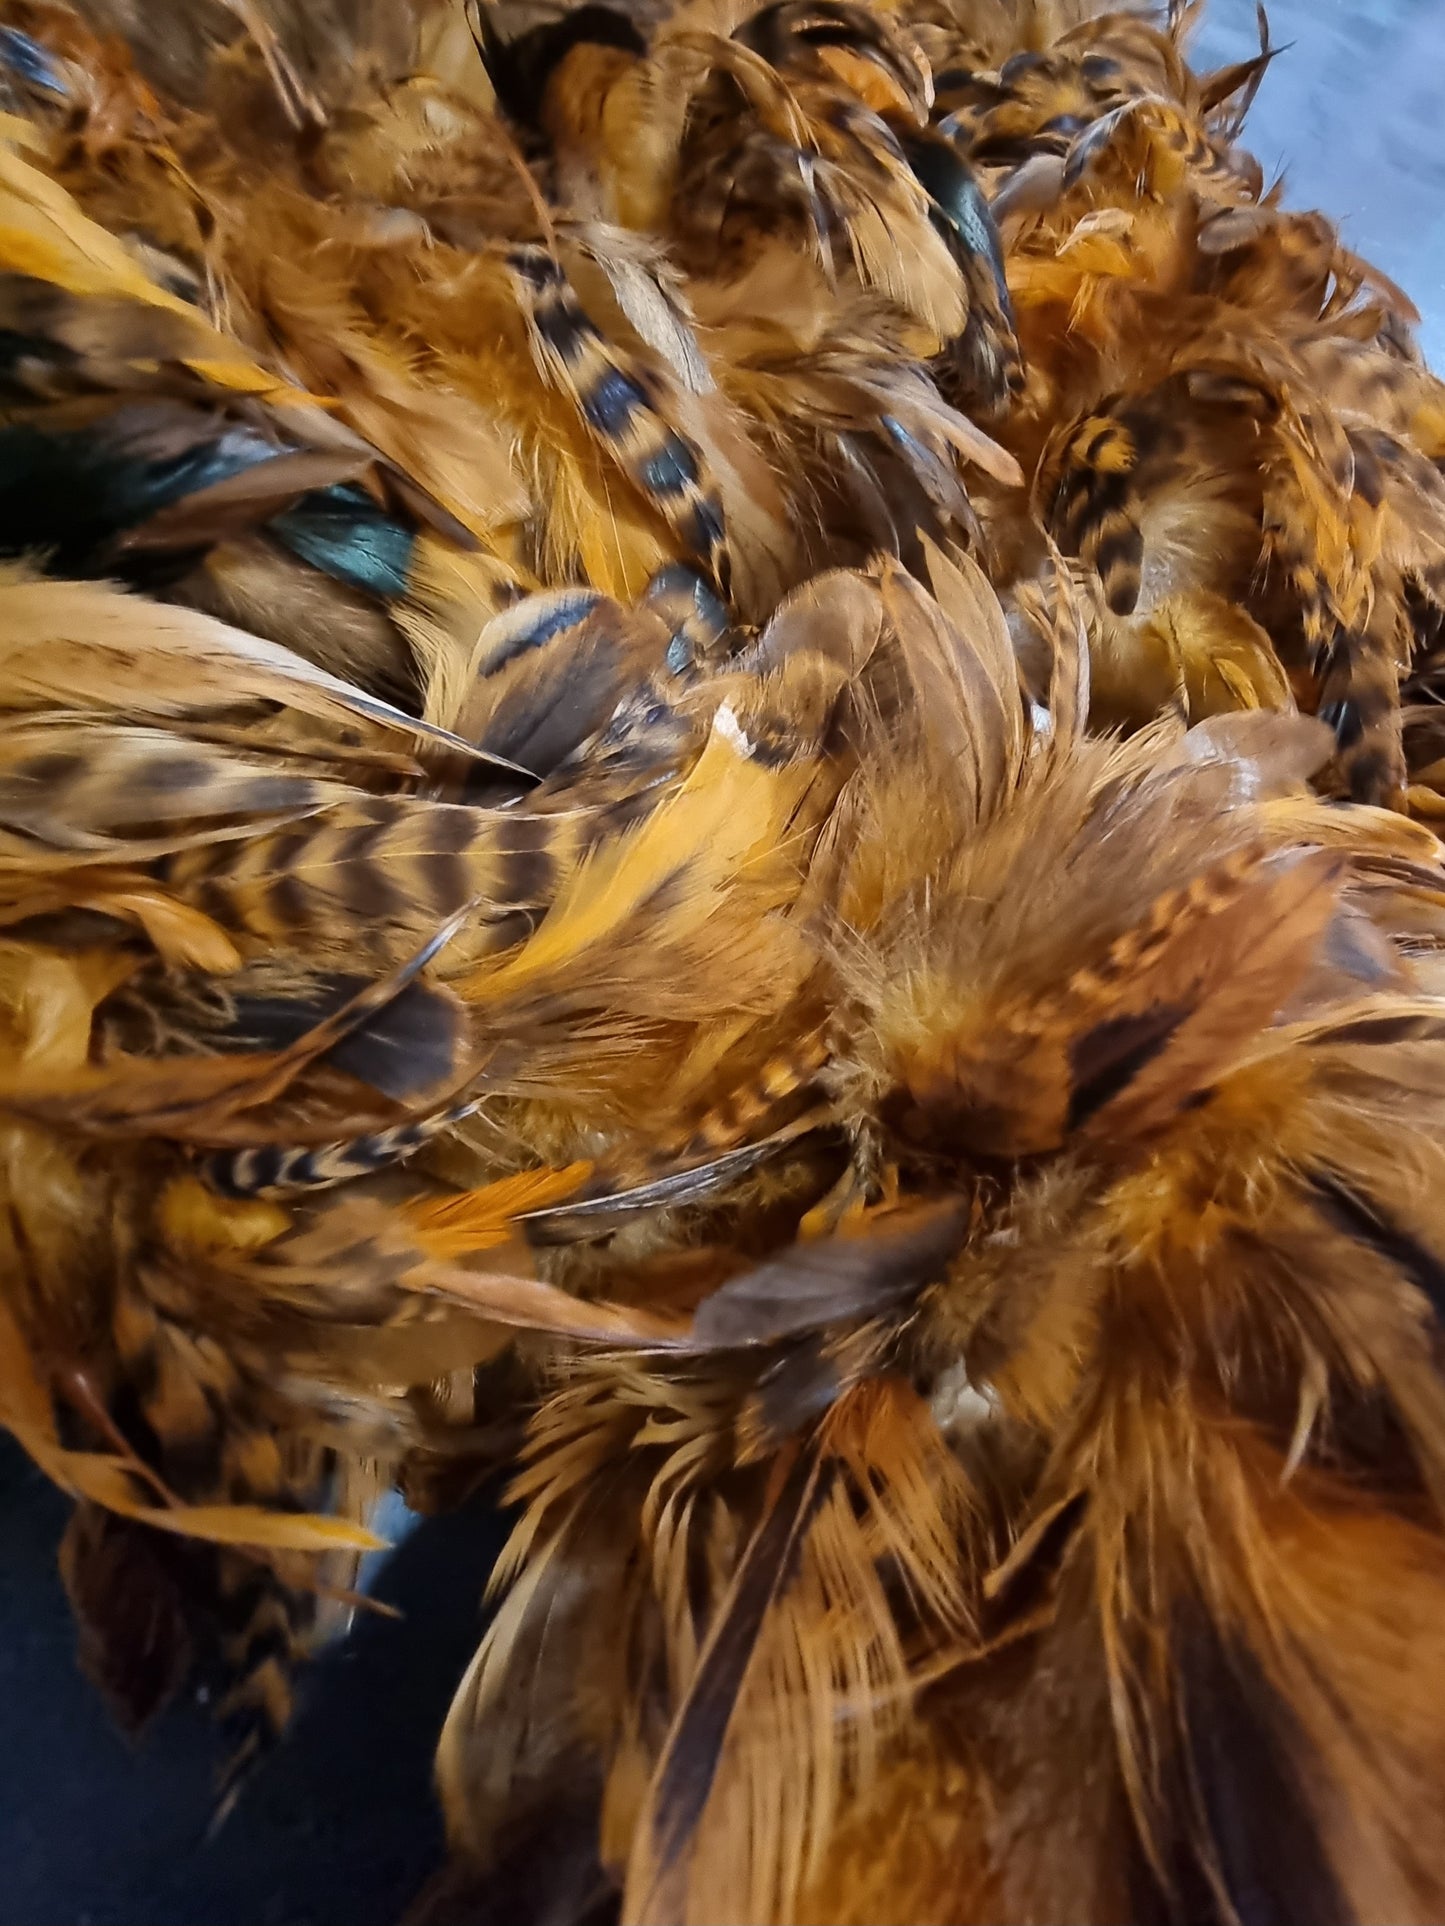 Orange Feather Boa